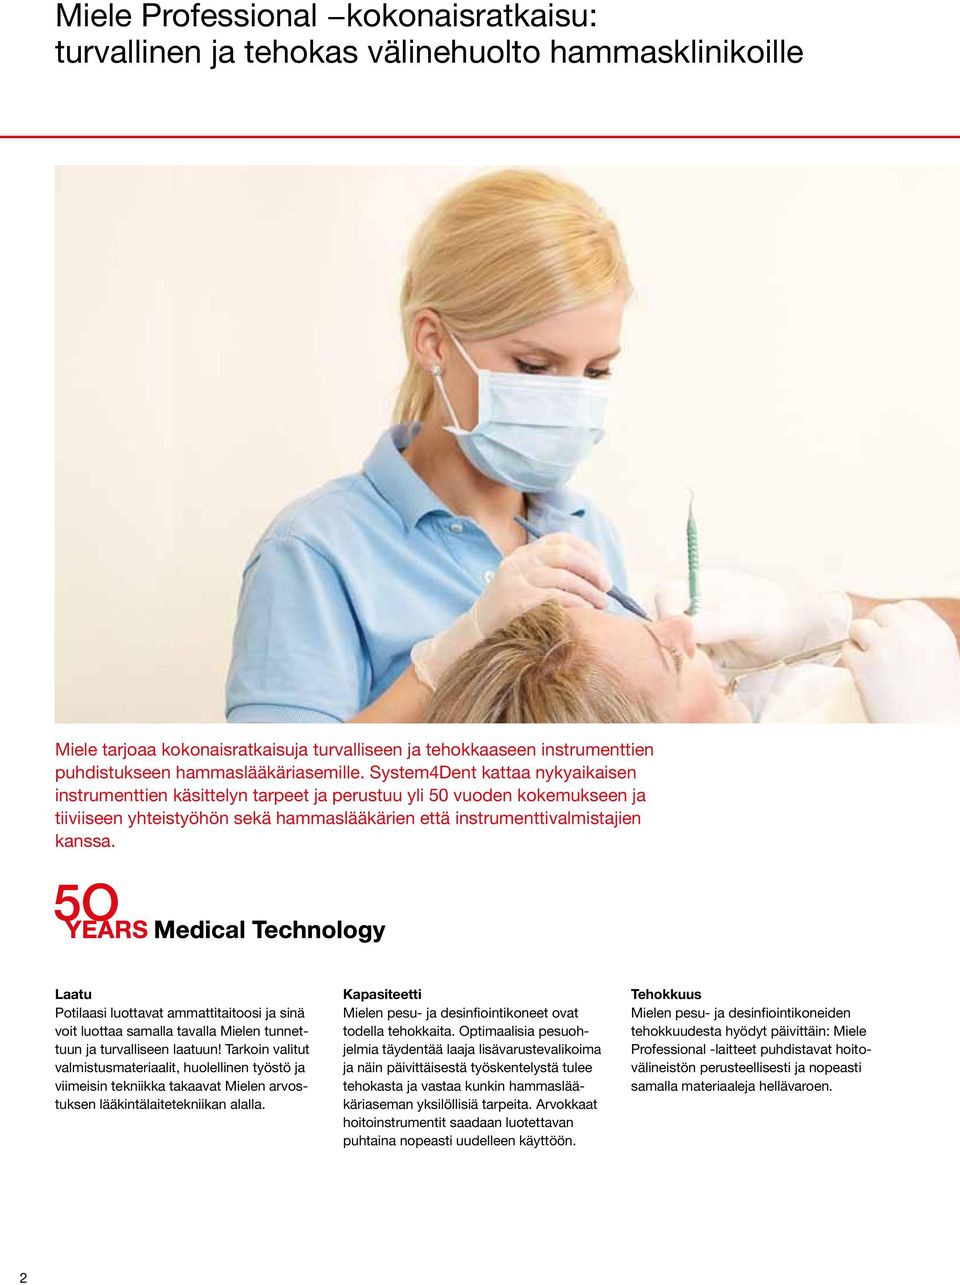 System4Dent kattaa nykyaikaisen instrumenttien käsittelyn tarpeet ja perustuu yli 50 vuoden kokemukseen ja tiiviiseen yhteistyöhön sekä hammaslääkärien että instrumenttivalmistajien kanssa.